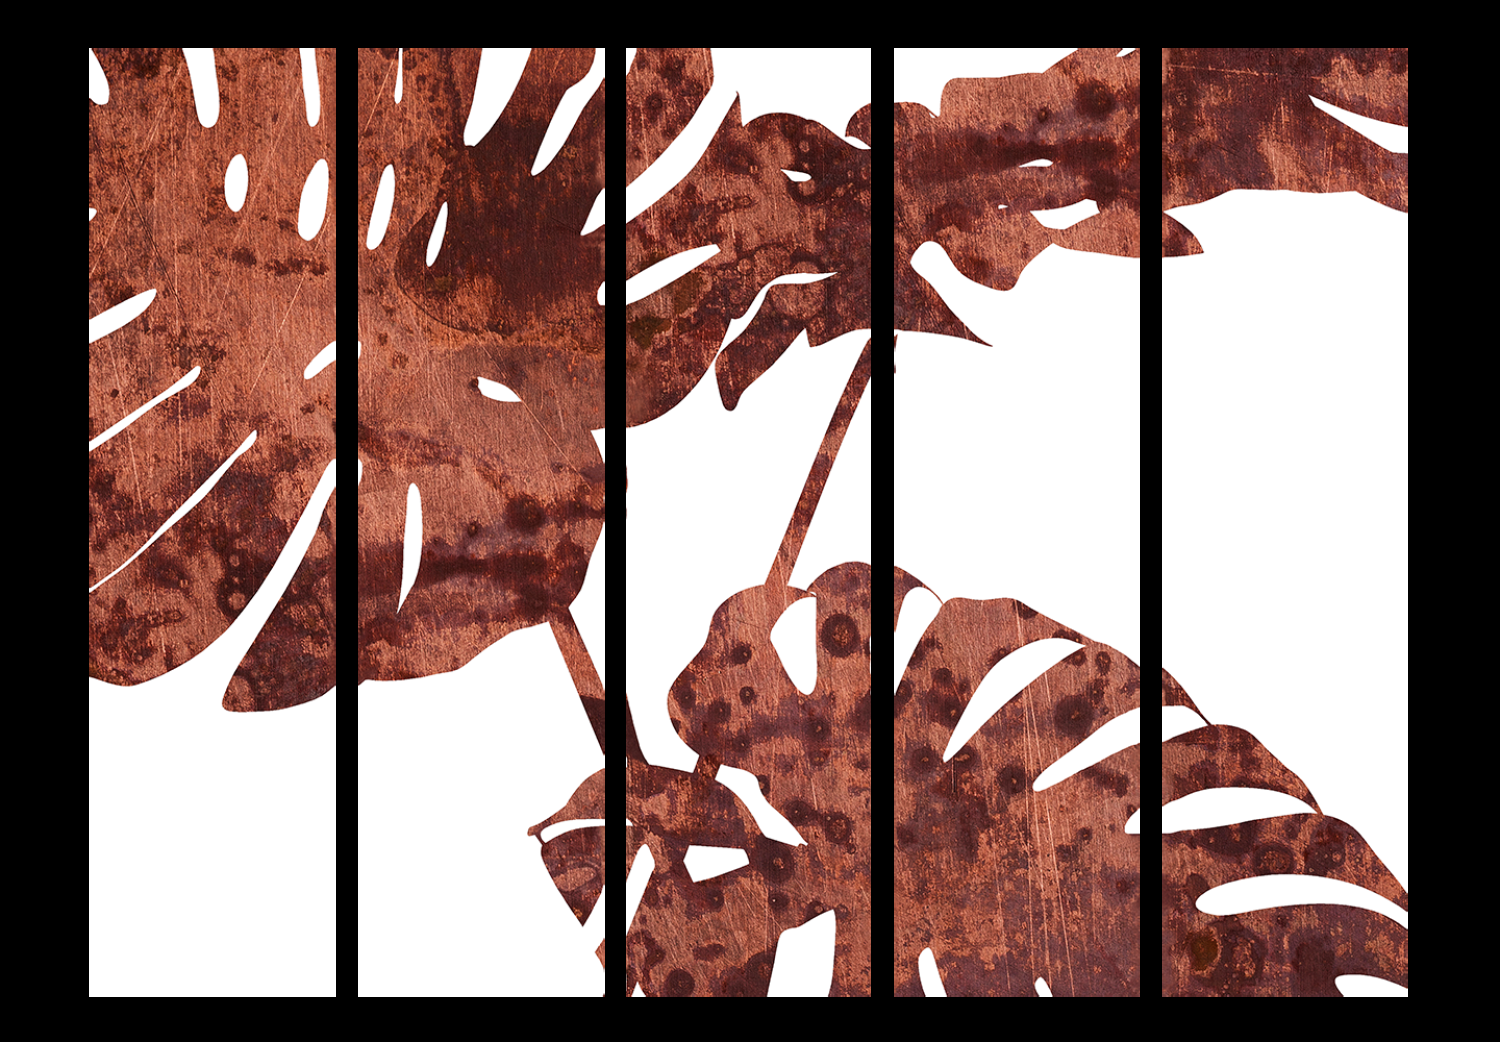 Biombo original Monstera elegante II (5 partes) - hojas oxidadas de planta tropical